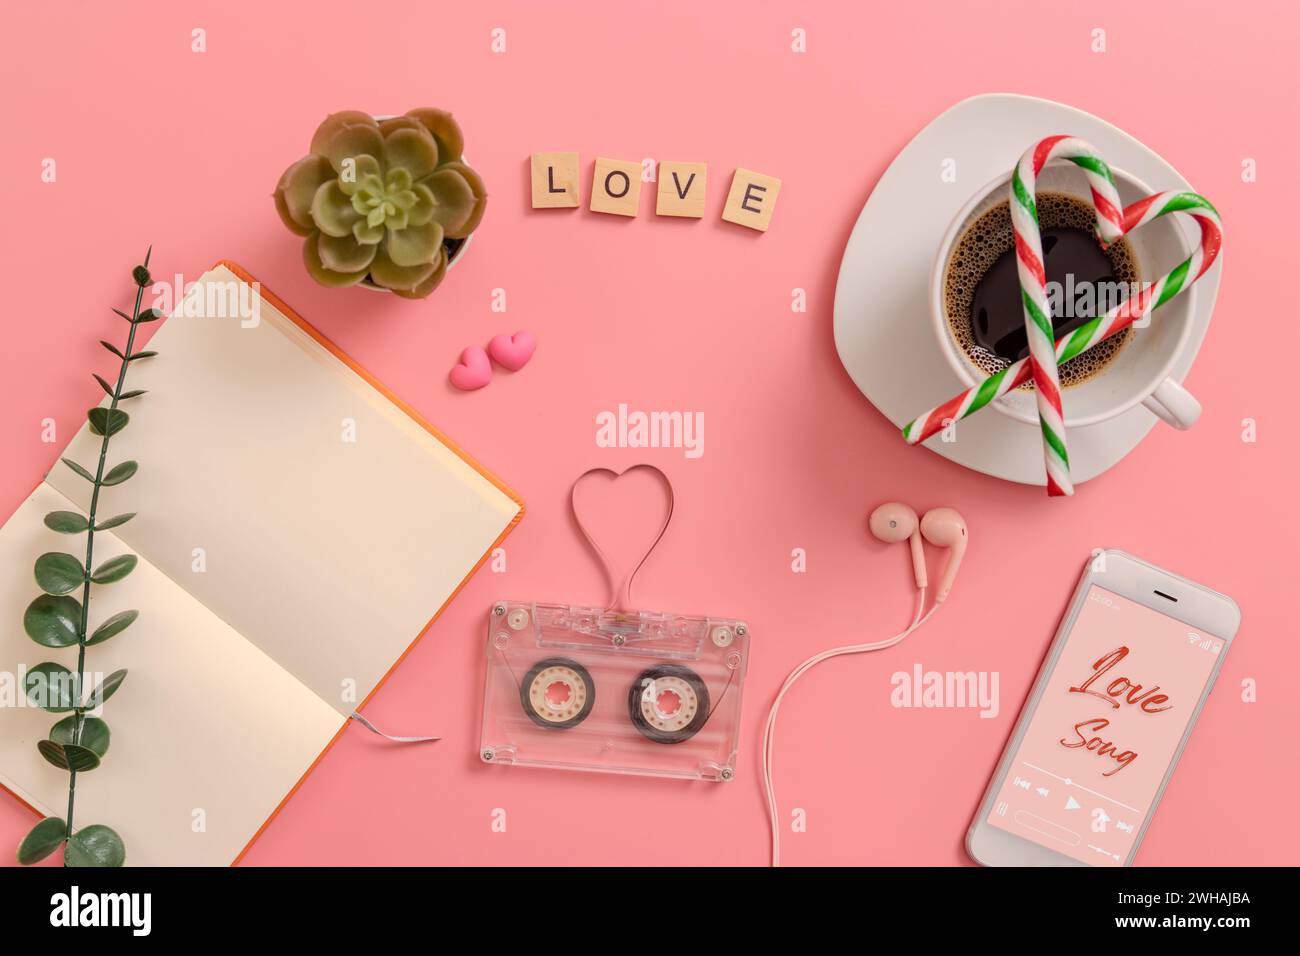 cassette audio transparente vintage bande magnétique en forme de coeur, page de livre vierge ouverte, canne de bonbons en forme de coeur sur tasse à café, écouteurs, c Banque D'Images